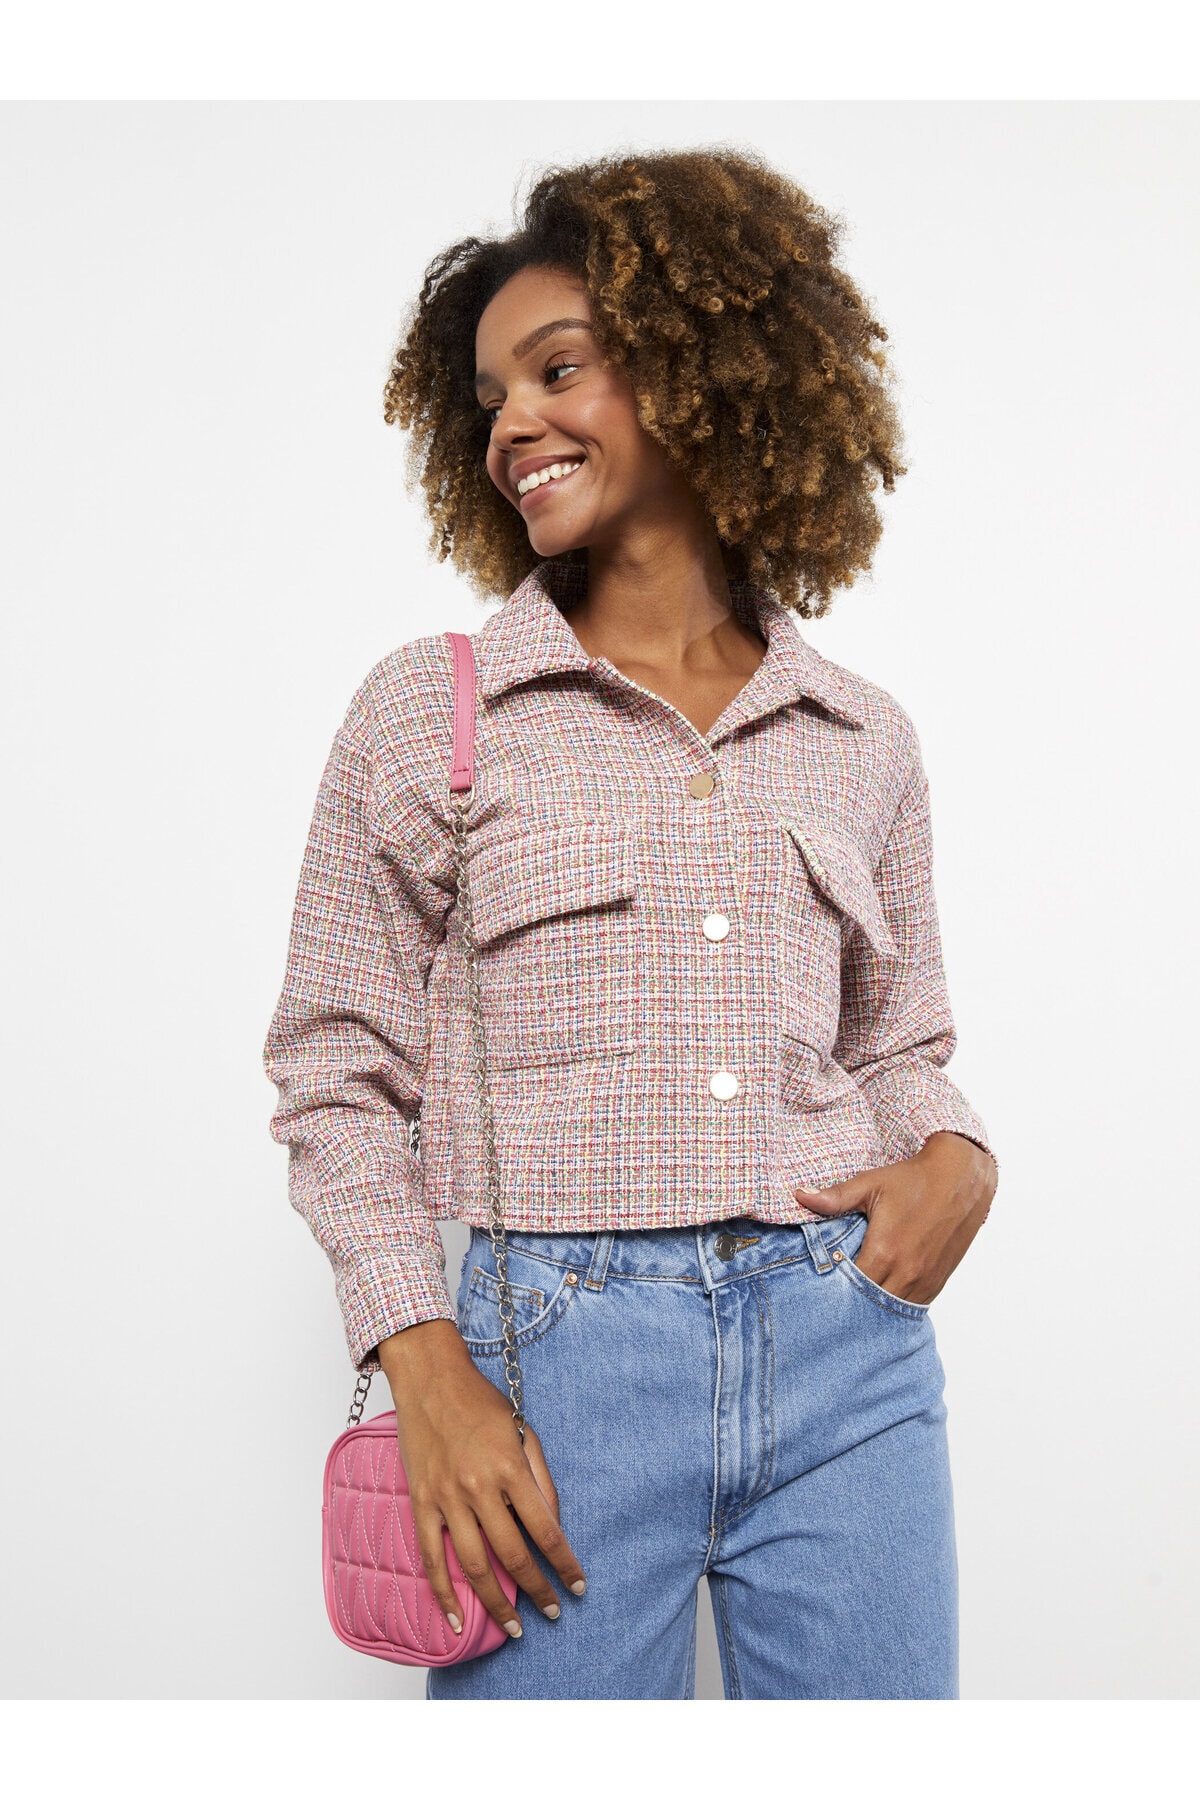 LC Waikiki Women's Self Patterned Long Sleeve Shirt Jacket